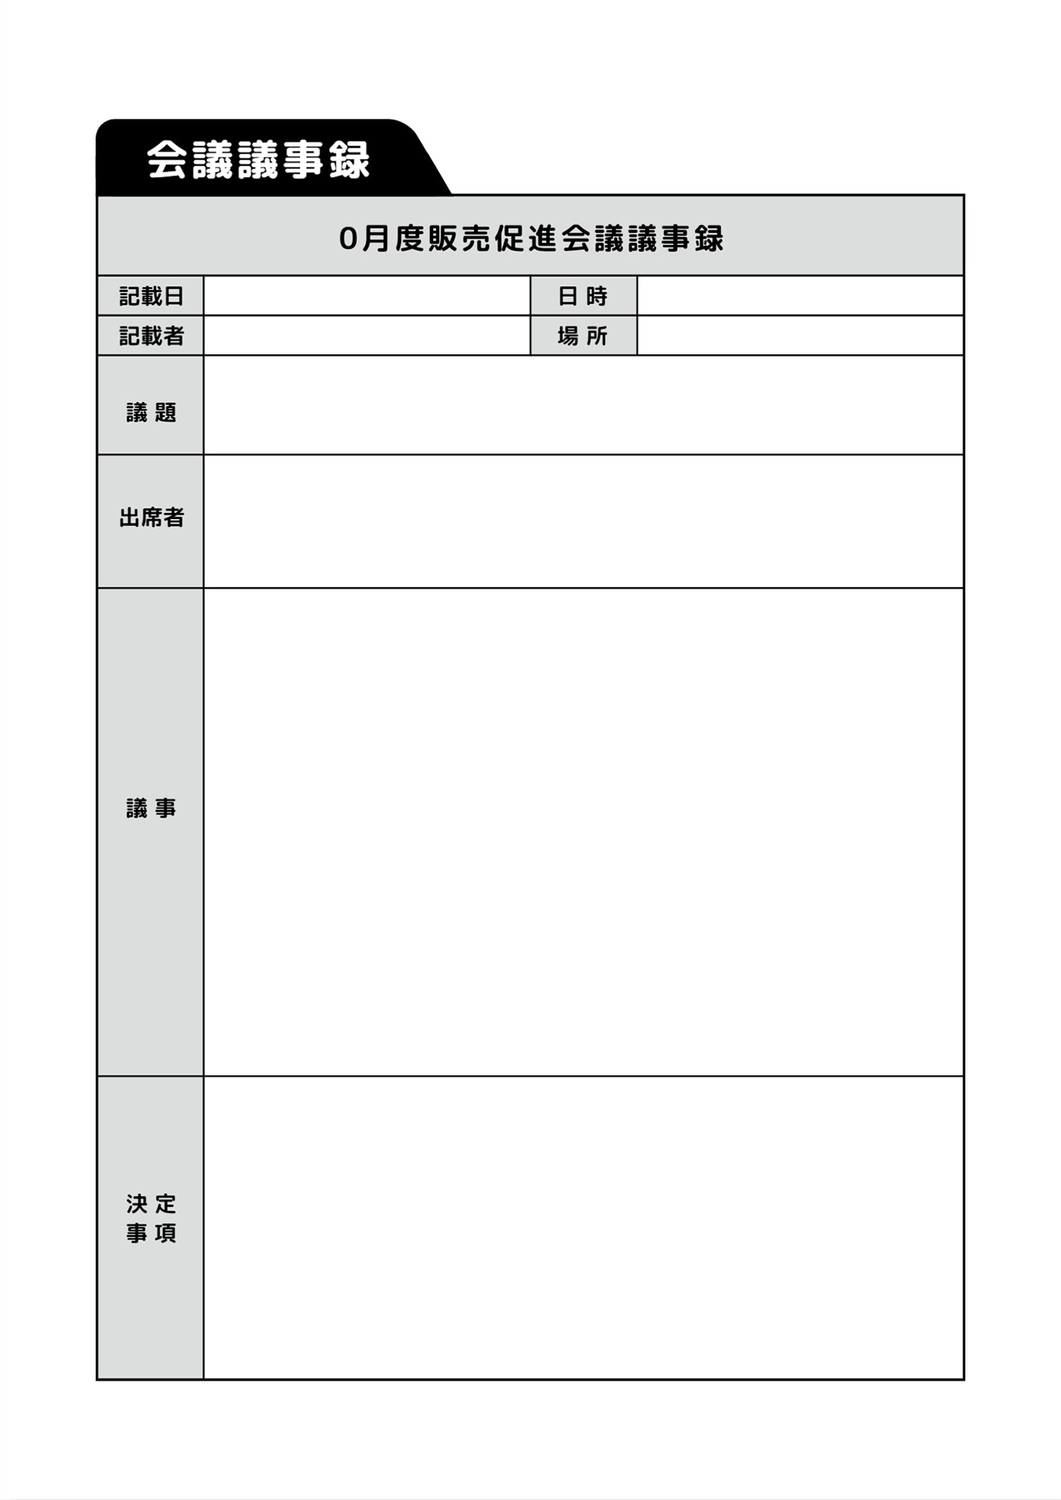 会議議事録テンプレート, theo chiều dọc, tài liệu, Tài liệu A4, Tài liệu A4 mẫu